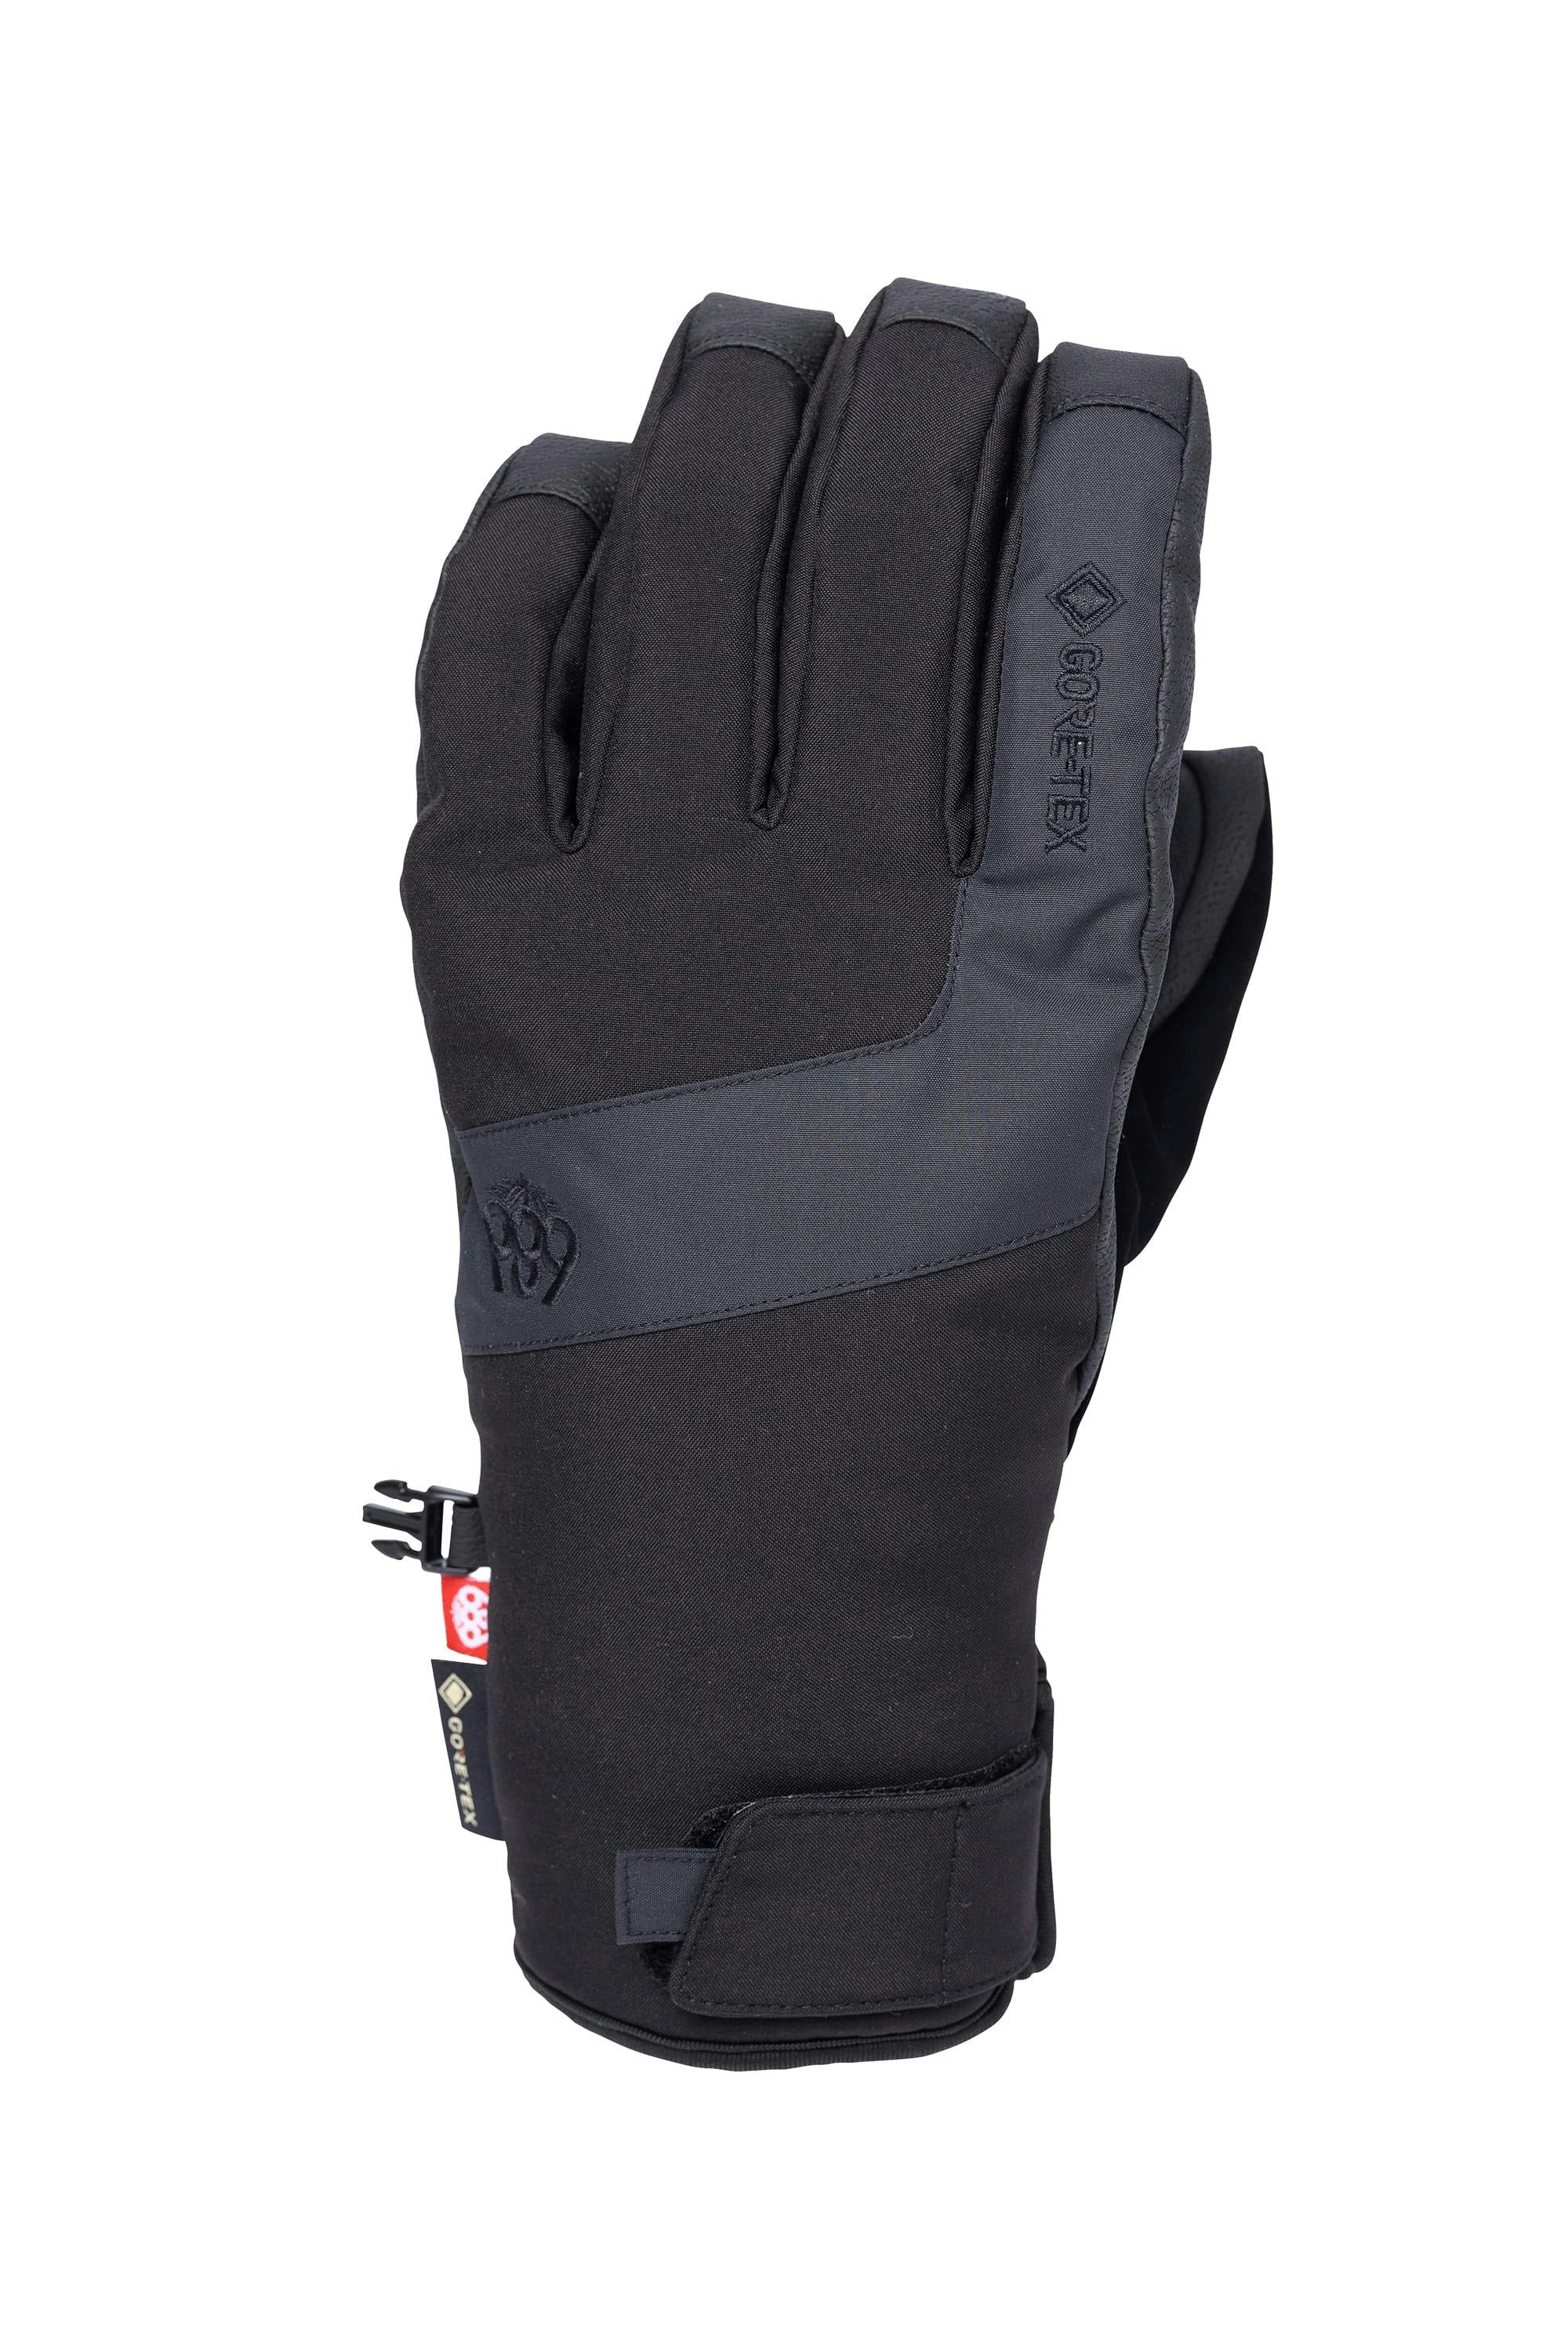 686 Men's Gore-Tex Linear Under Cuff 3L Insulated Glove